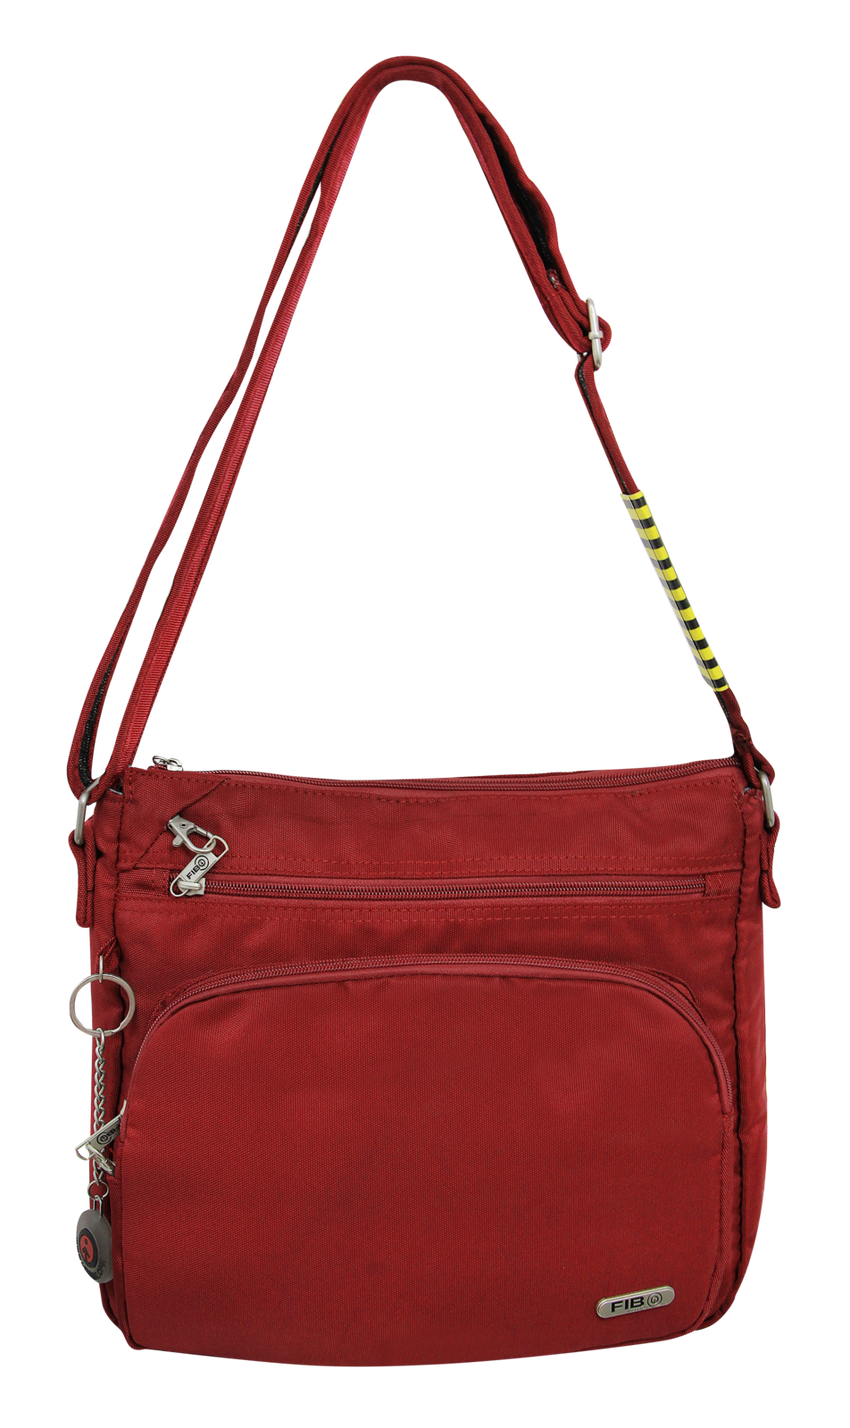 FIB Mens Crossbody Bag Satchel Adjustable Shoulder Strap Travel - Burgundy Tristar Online